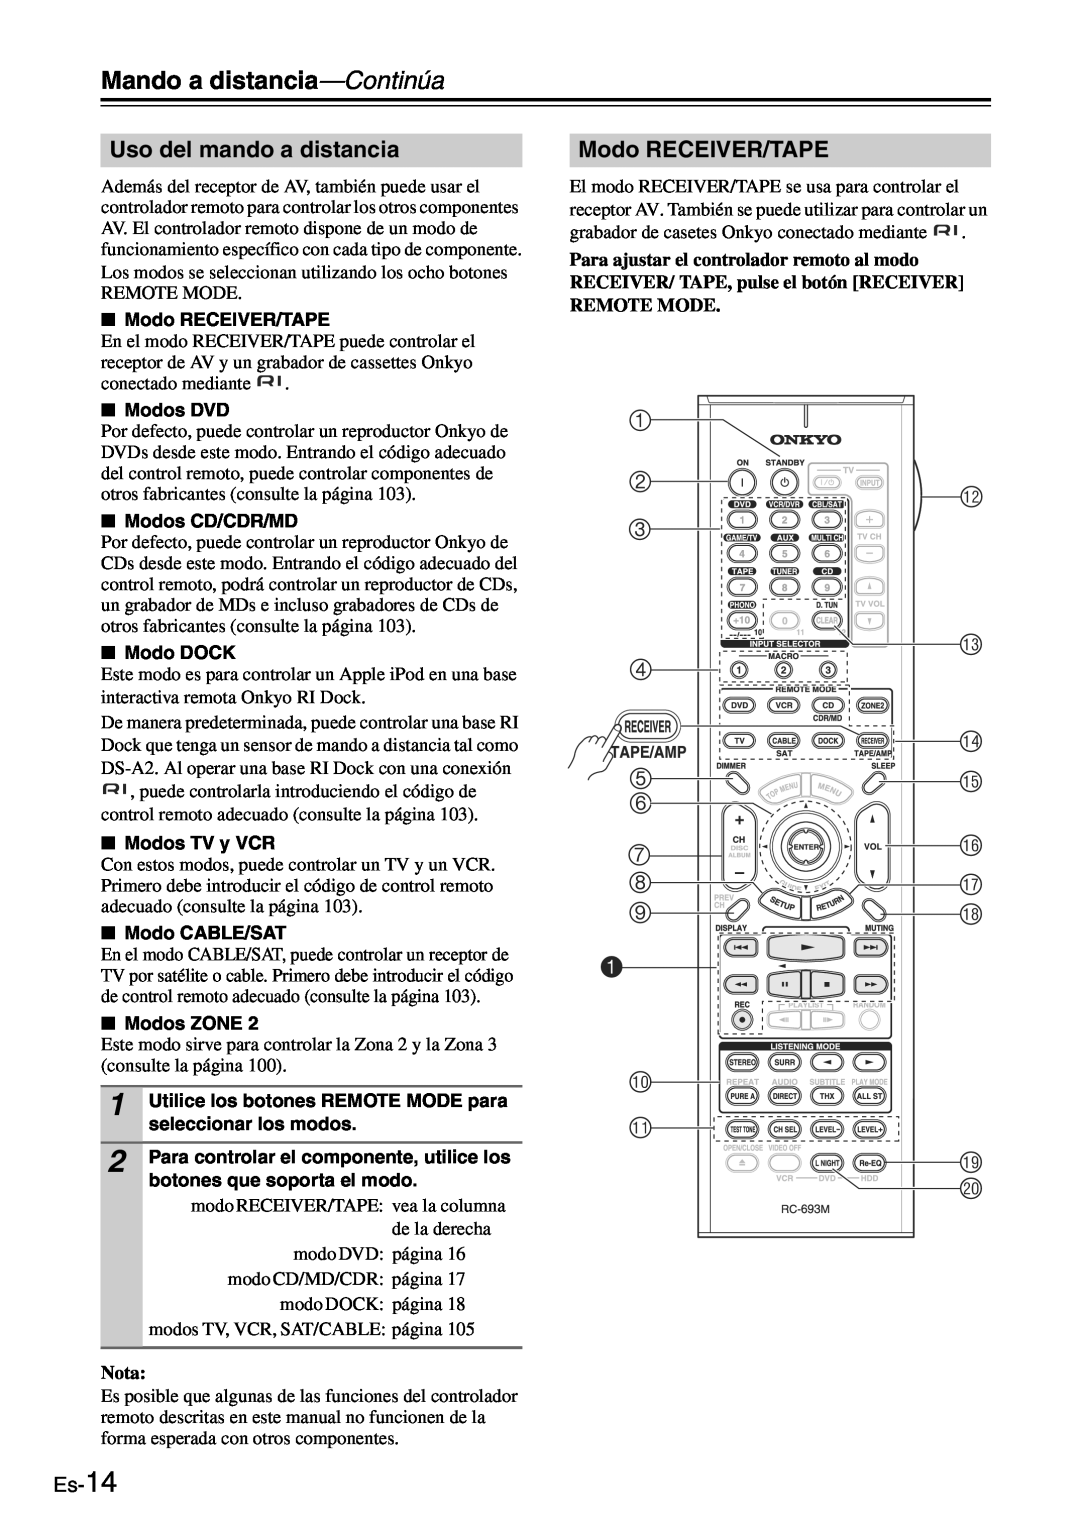 Onkyo TX-SR705 manual Mando a distancia—Continúa, Uso del mando a distancia, Modo RECEIVER/TAPE 